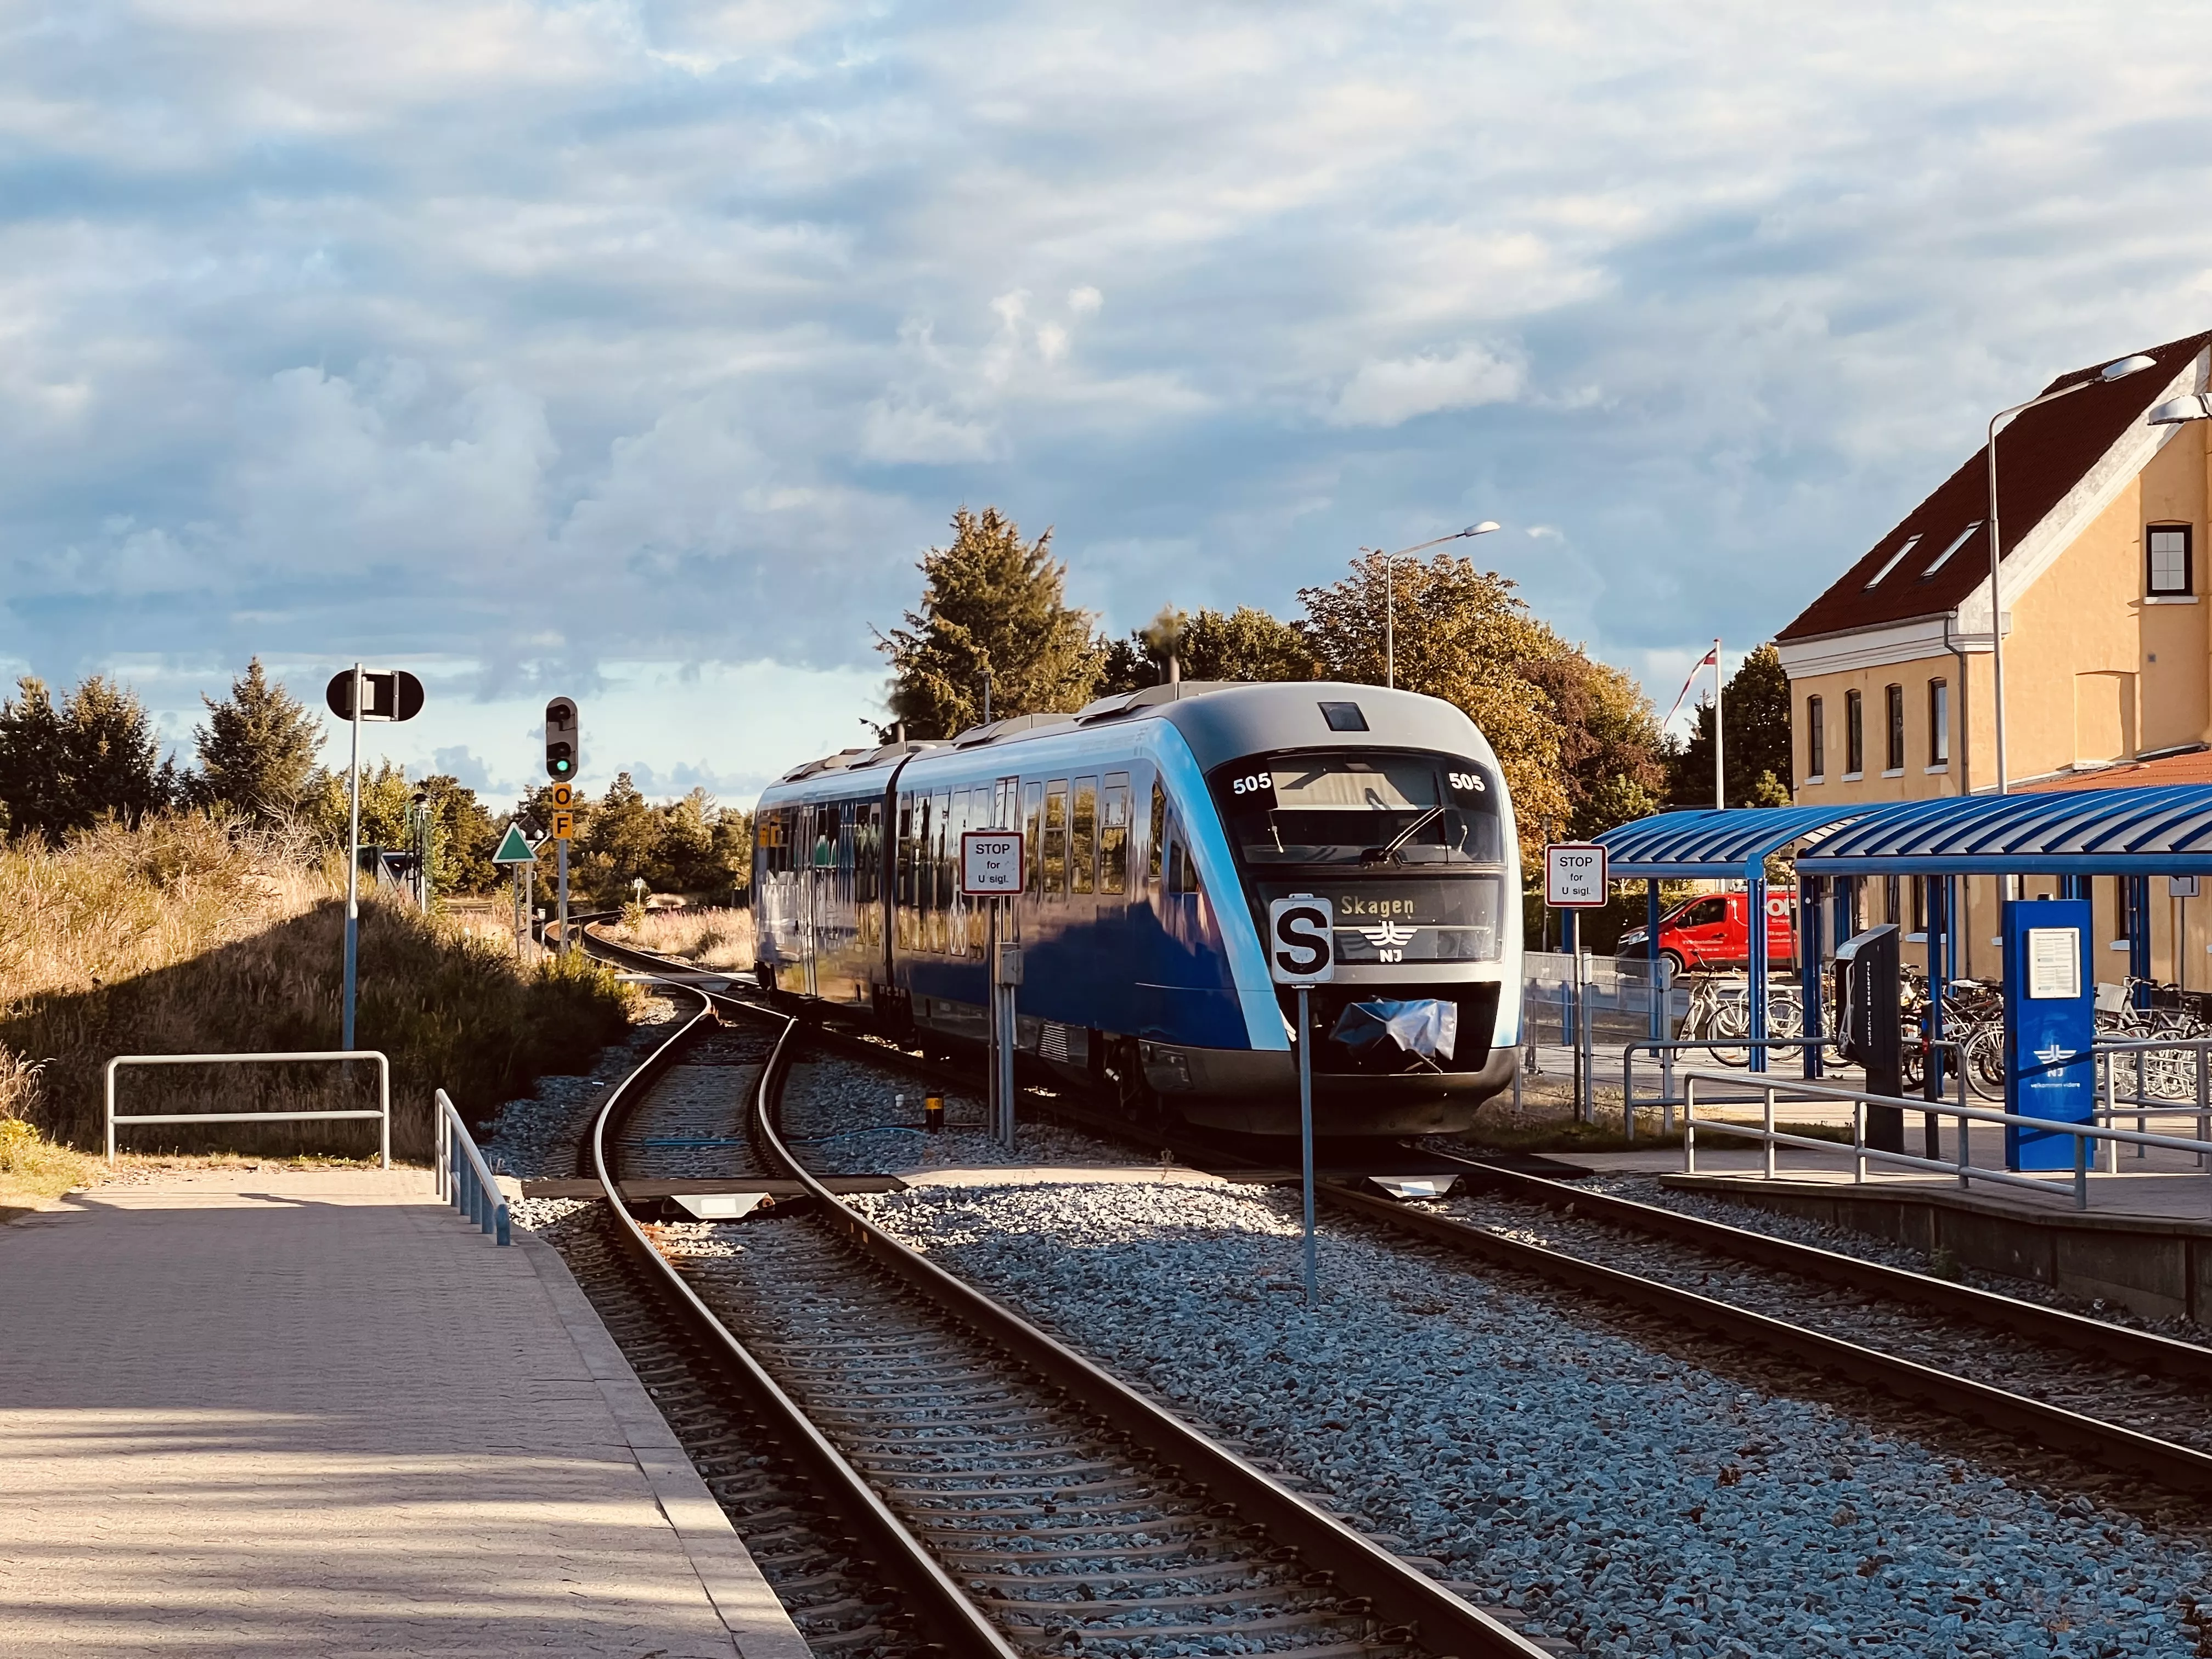 Billede af tog ud for Ålbæk Trinbræt.